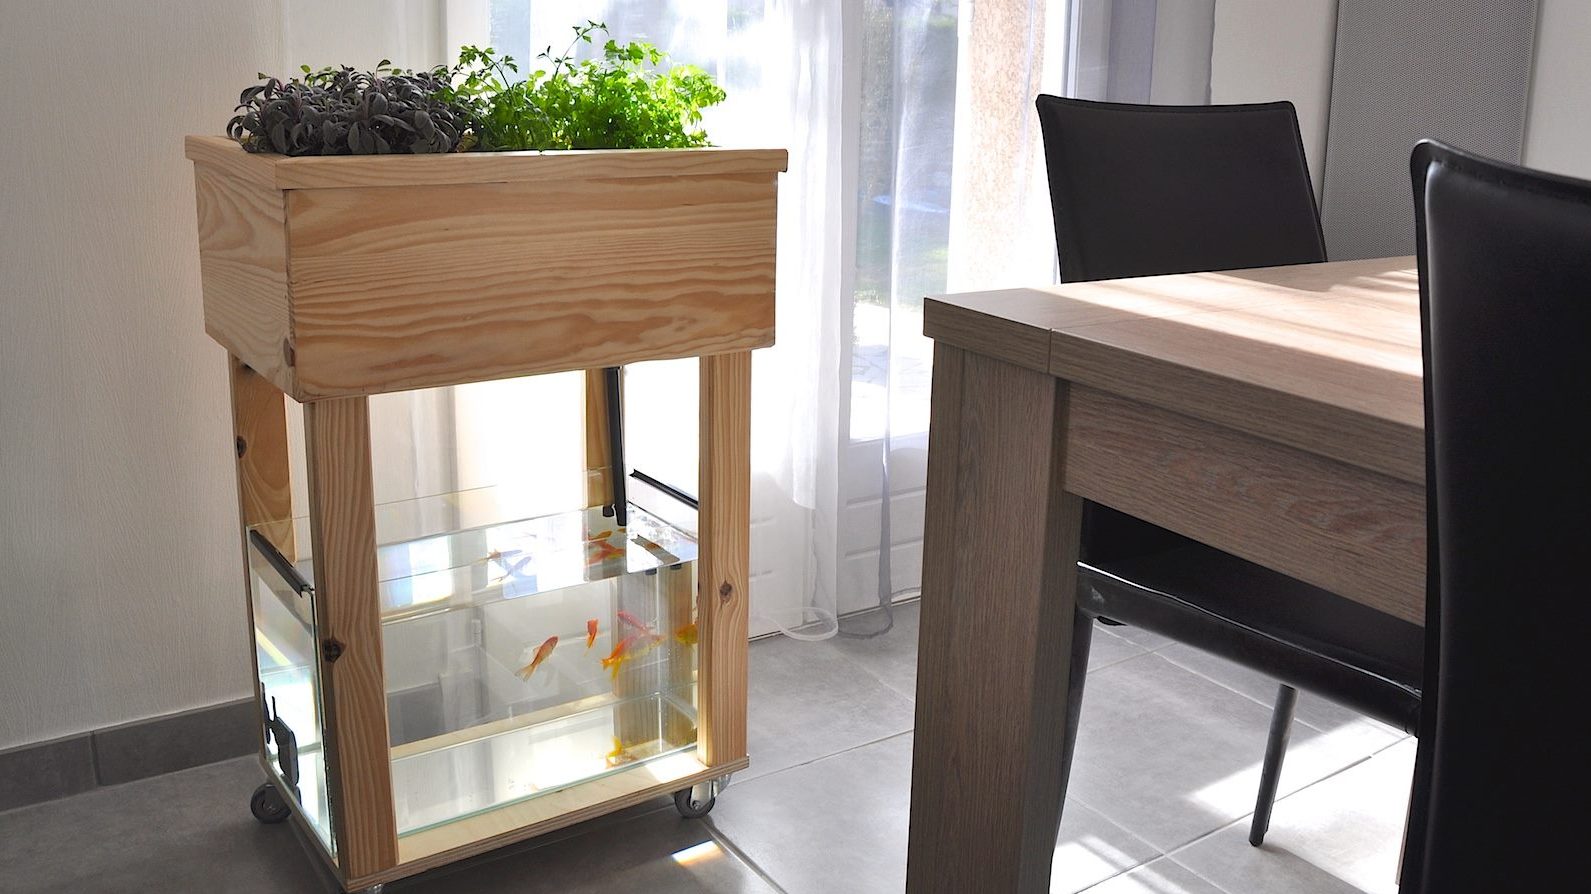 Un kit pour faire pousser plantes et légumes chez soi grâce à l'aquaponie